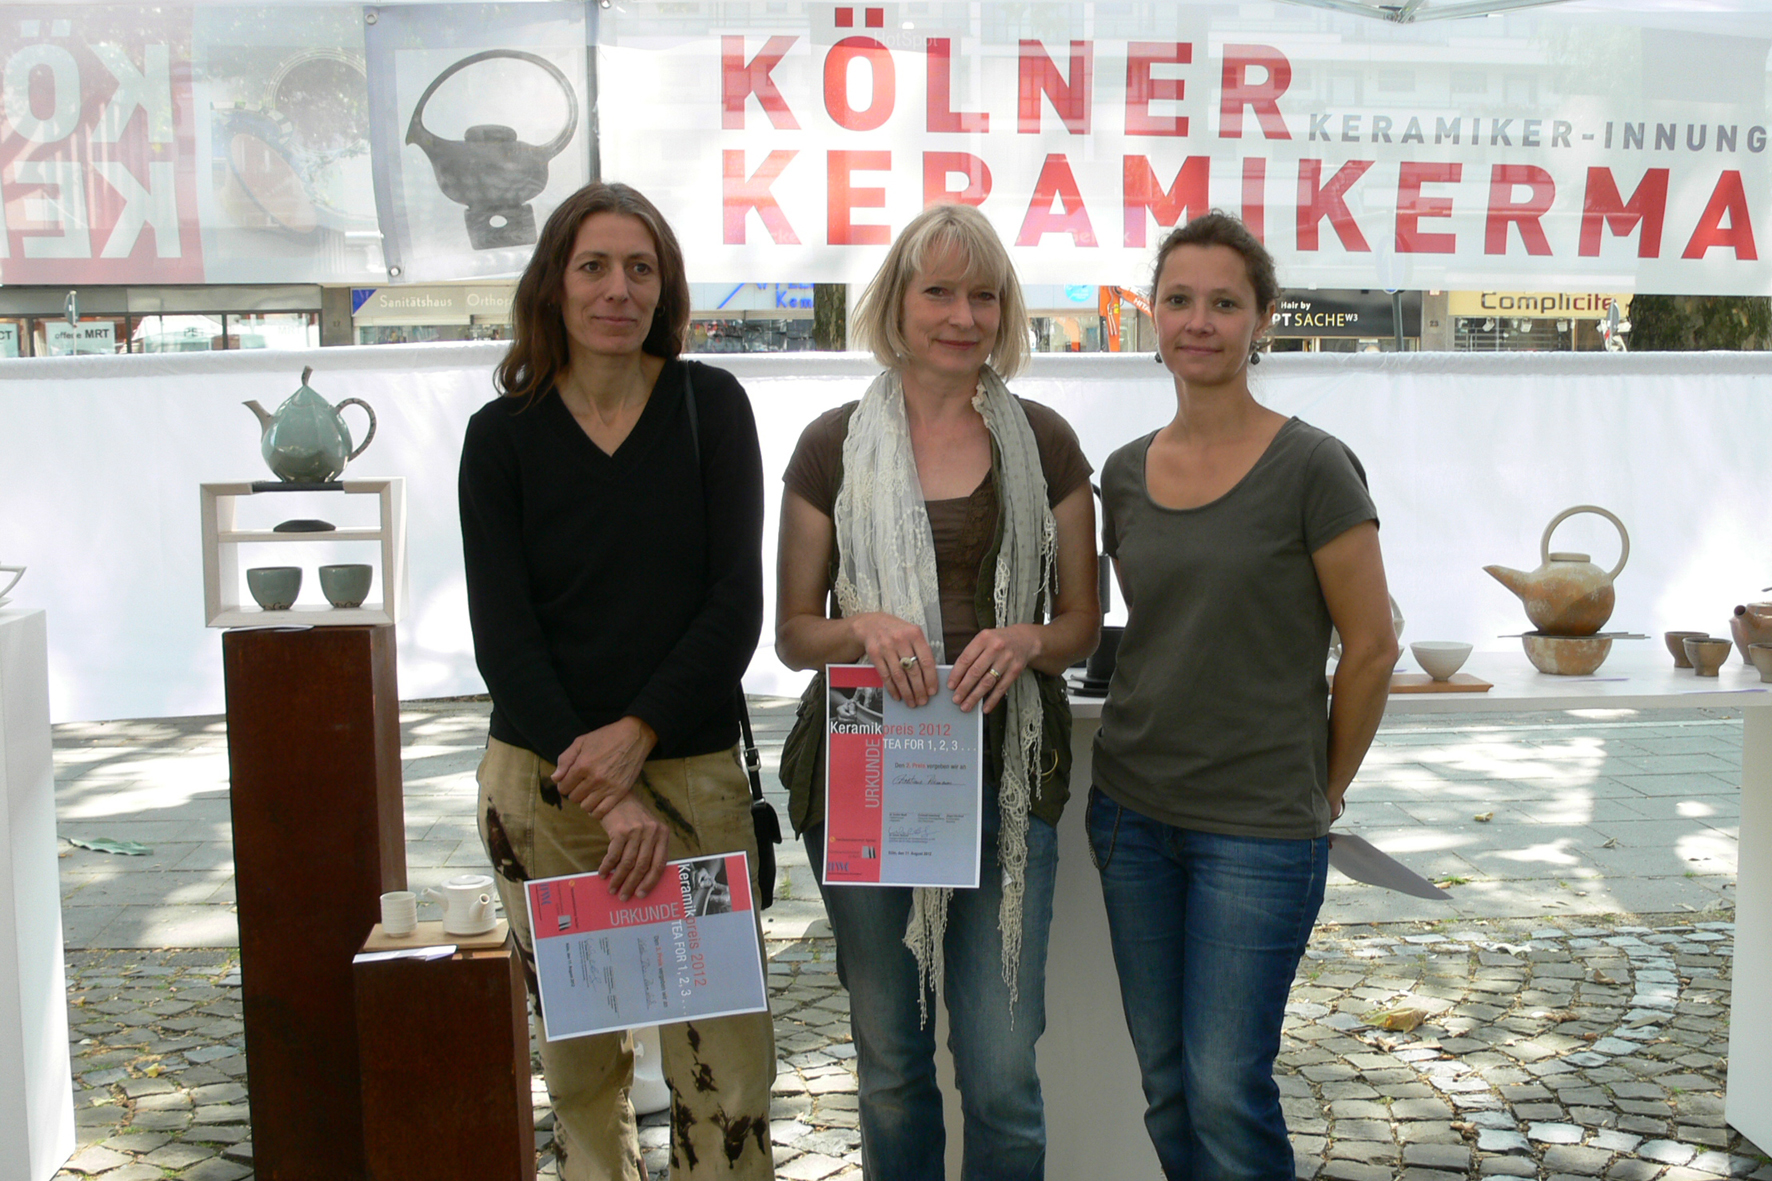 Preisträger Kölner Keramikermarkt 2012 - Kölner Keramikpreis